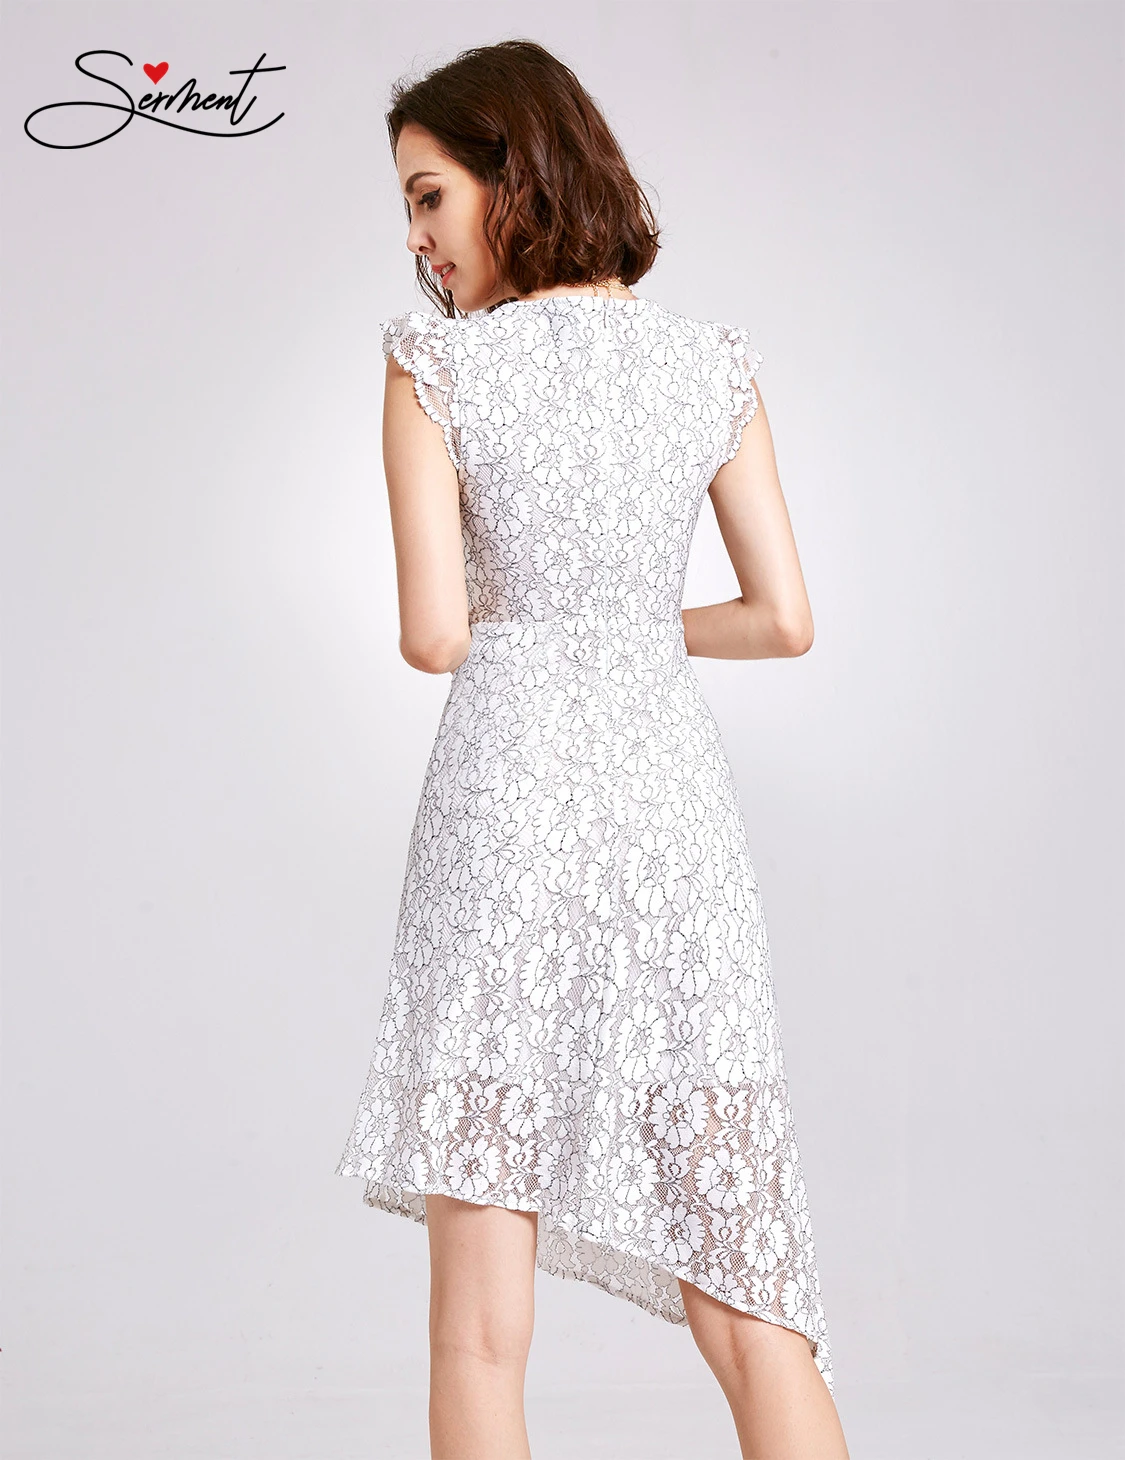 white summer evening dress